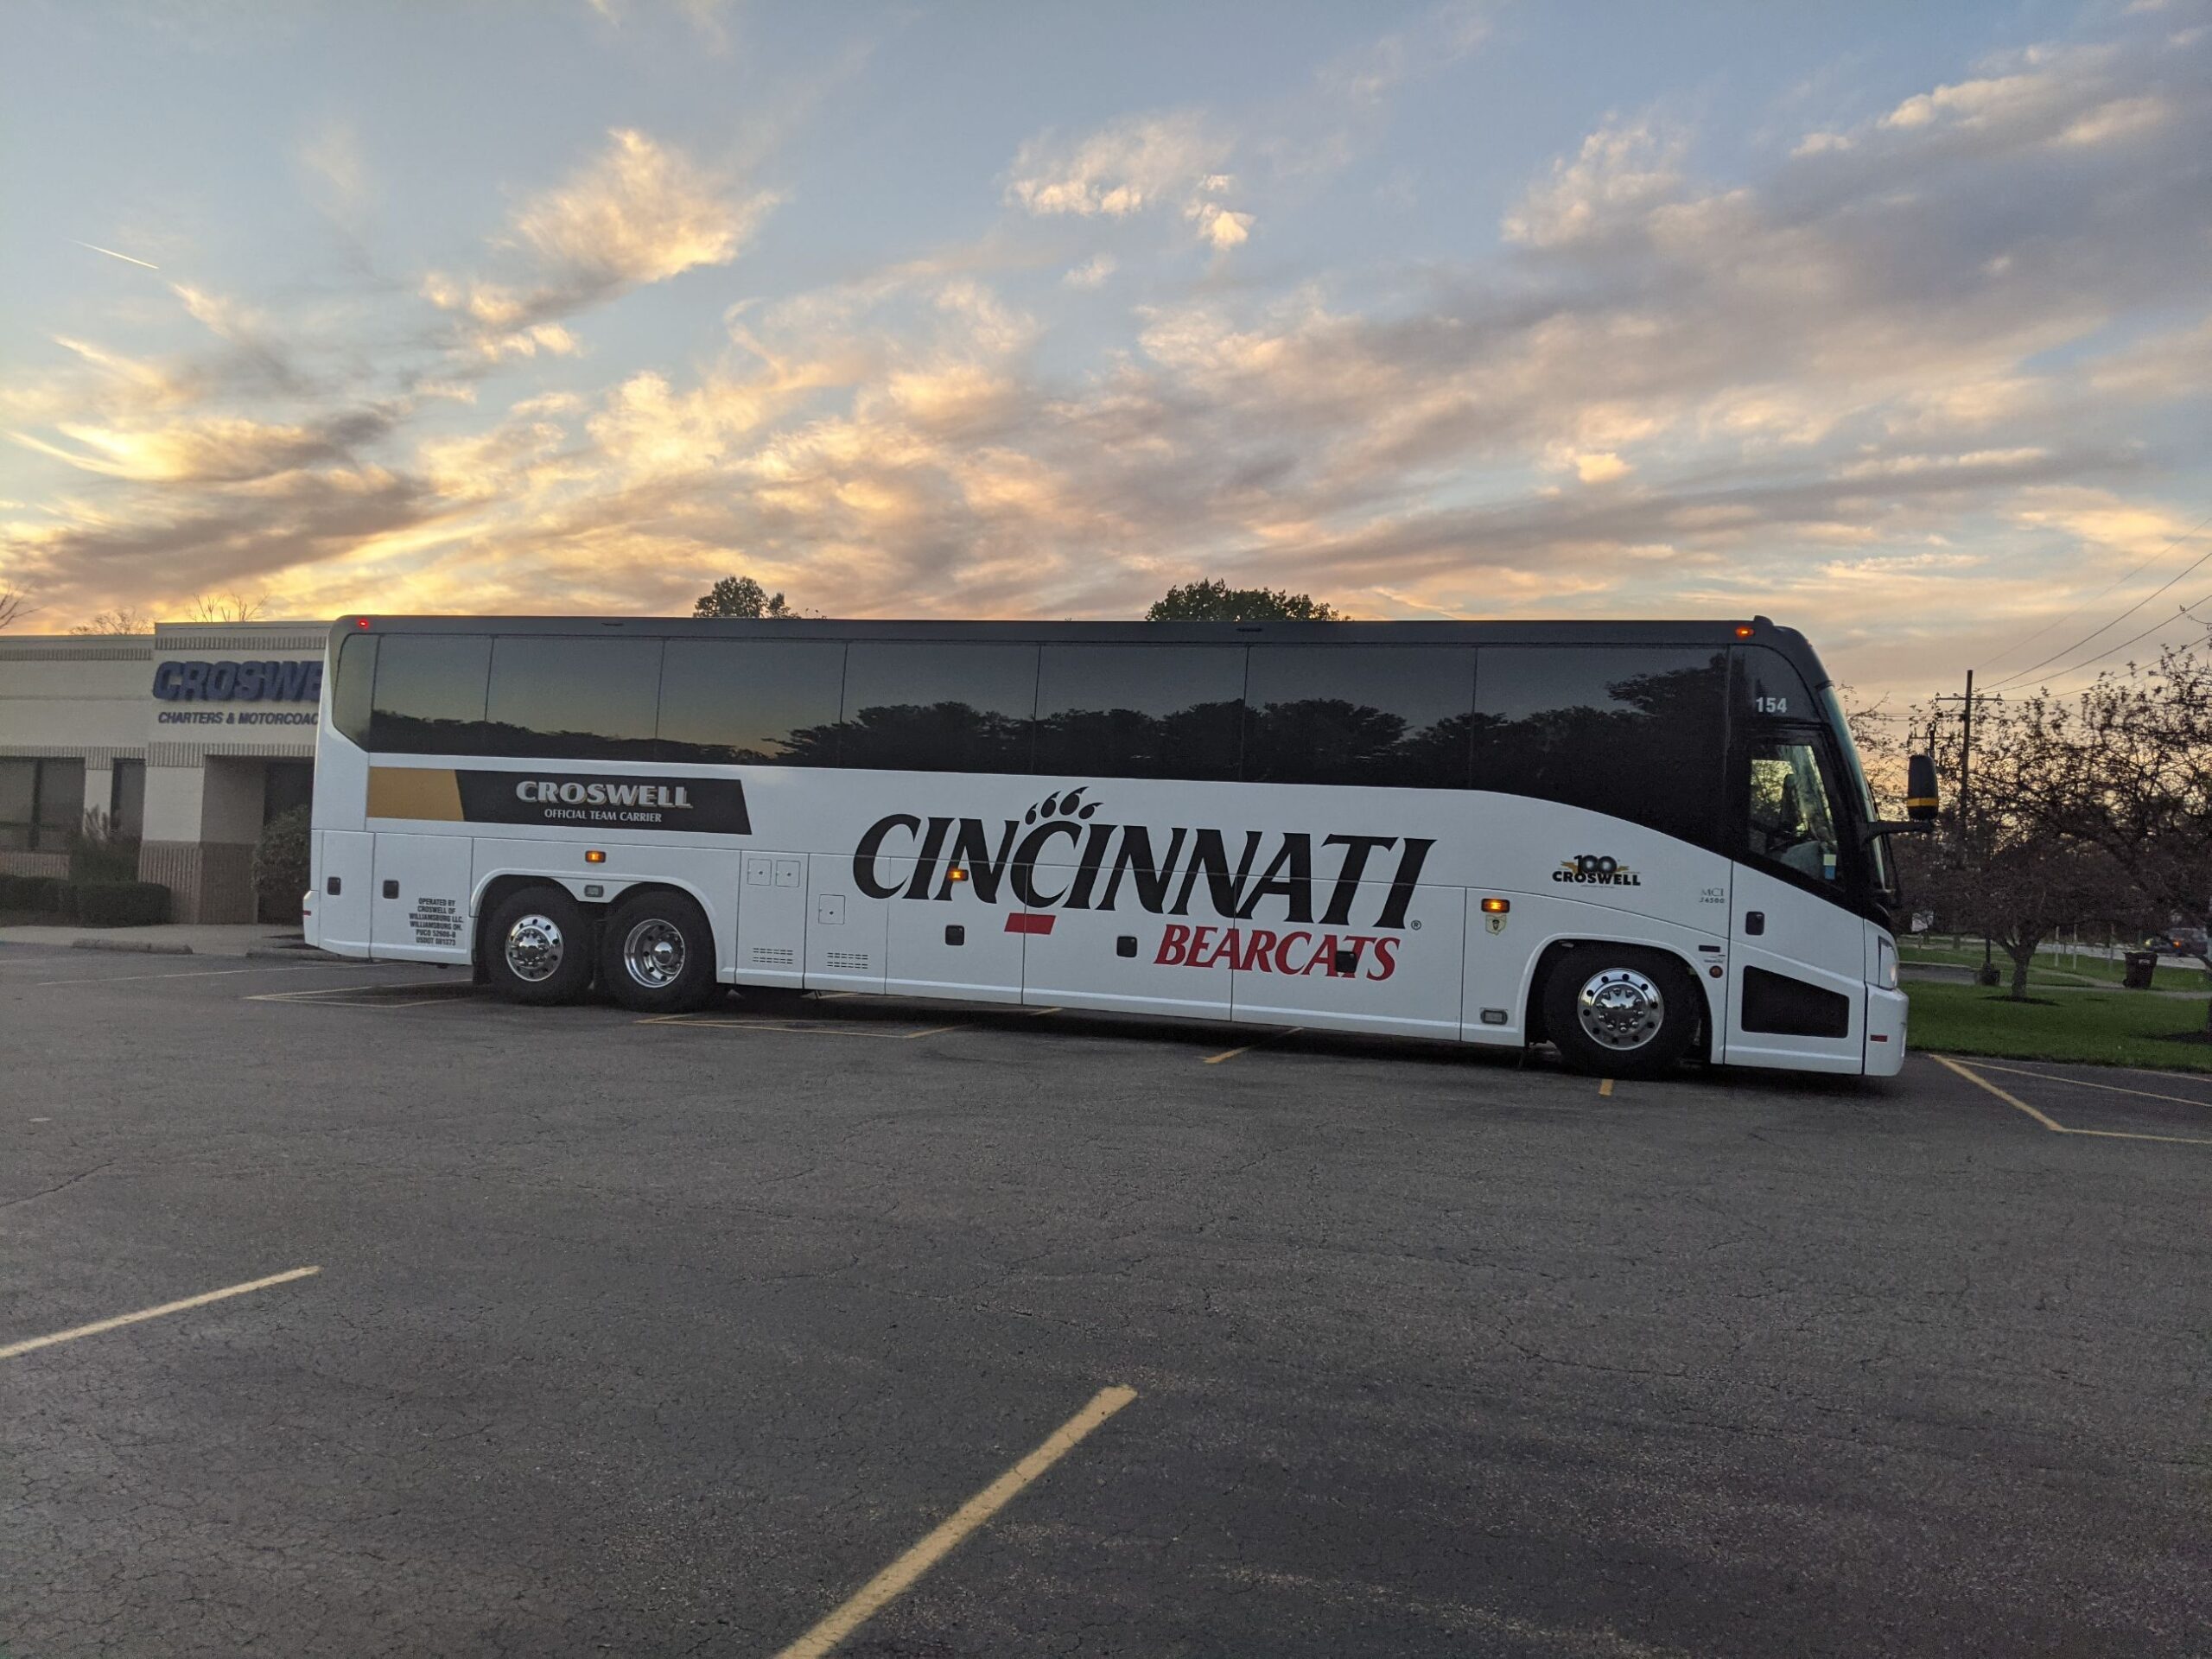 Cincinnati Charter Bus Services